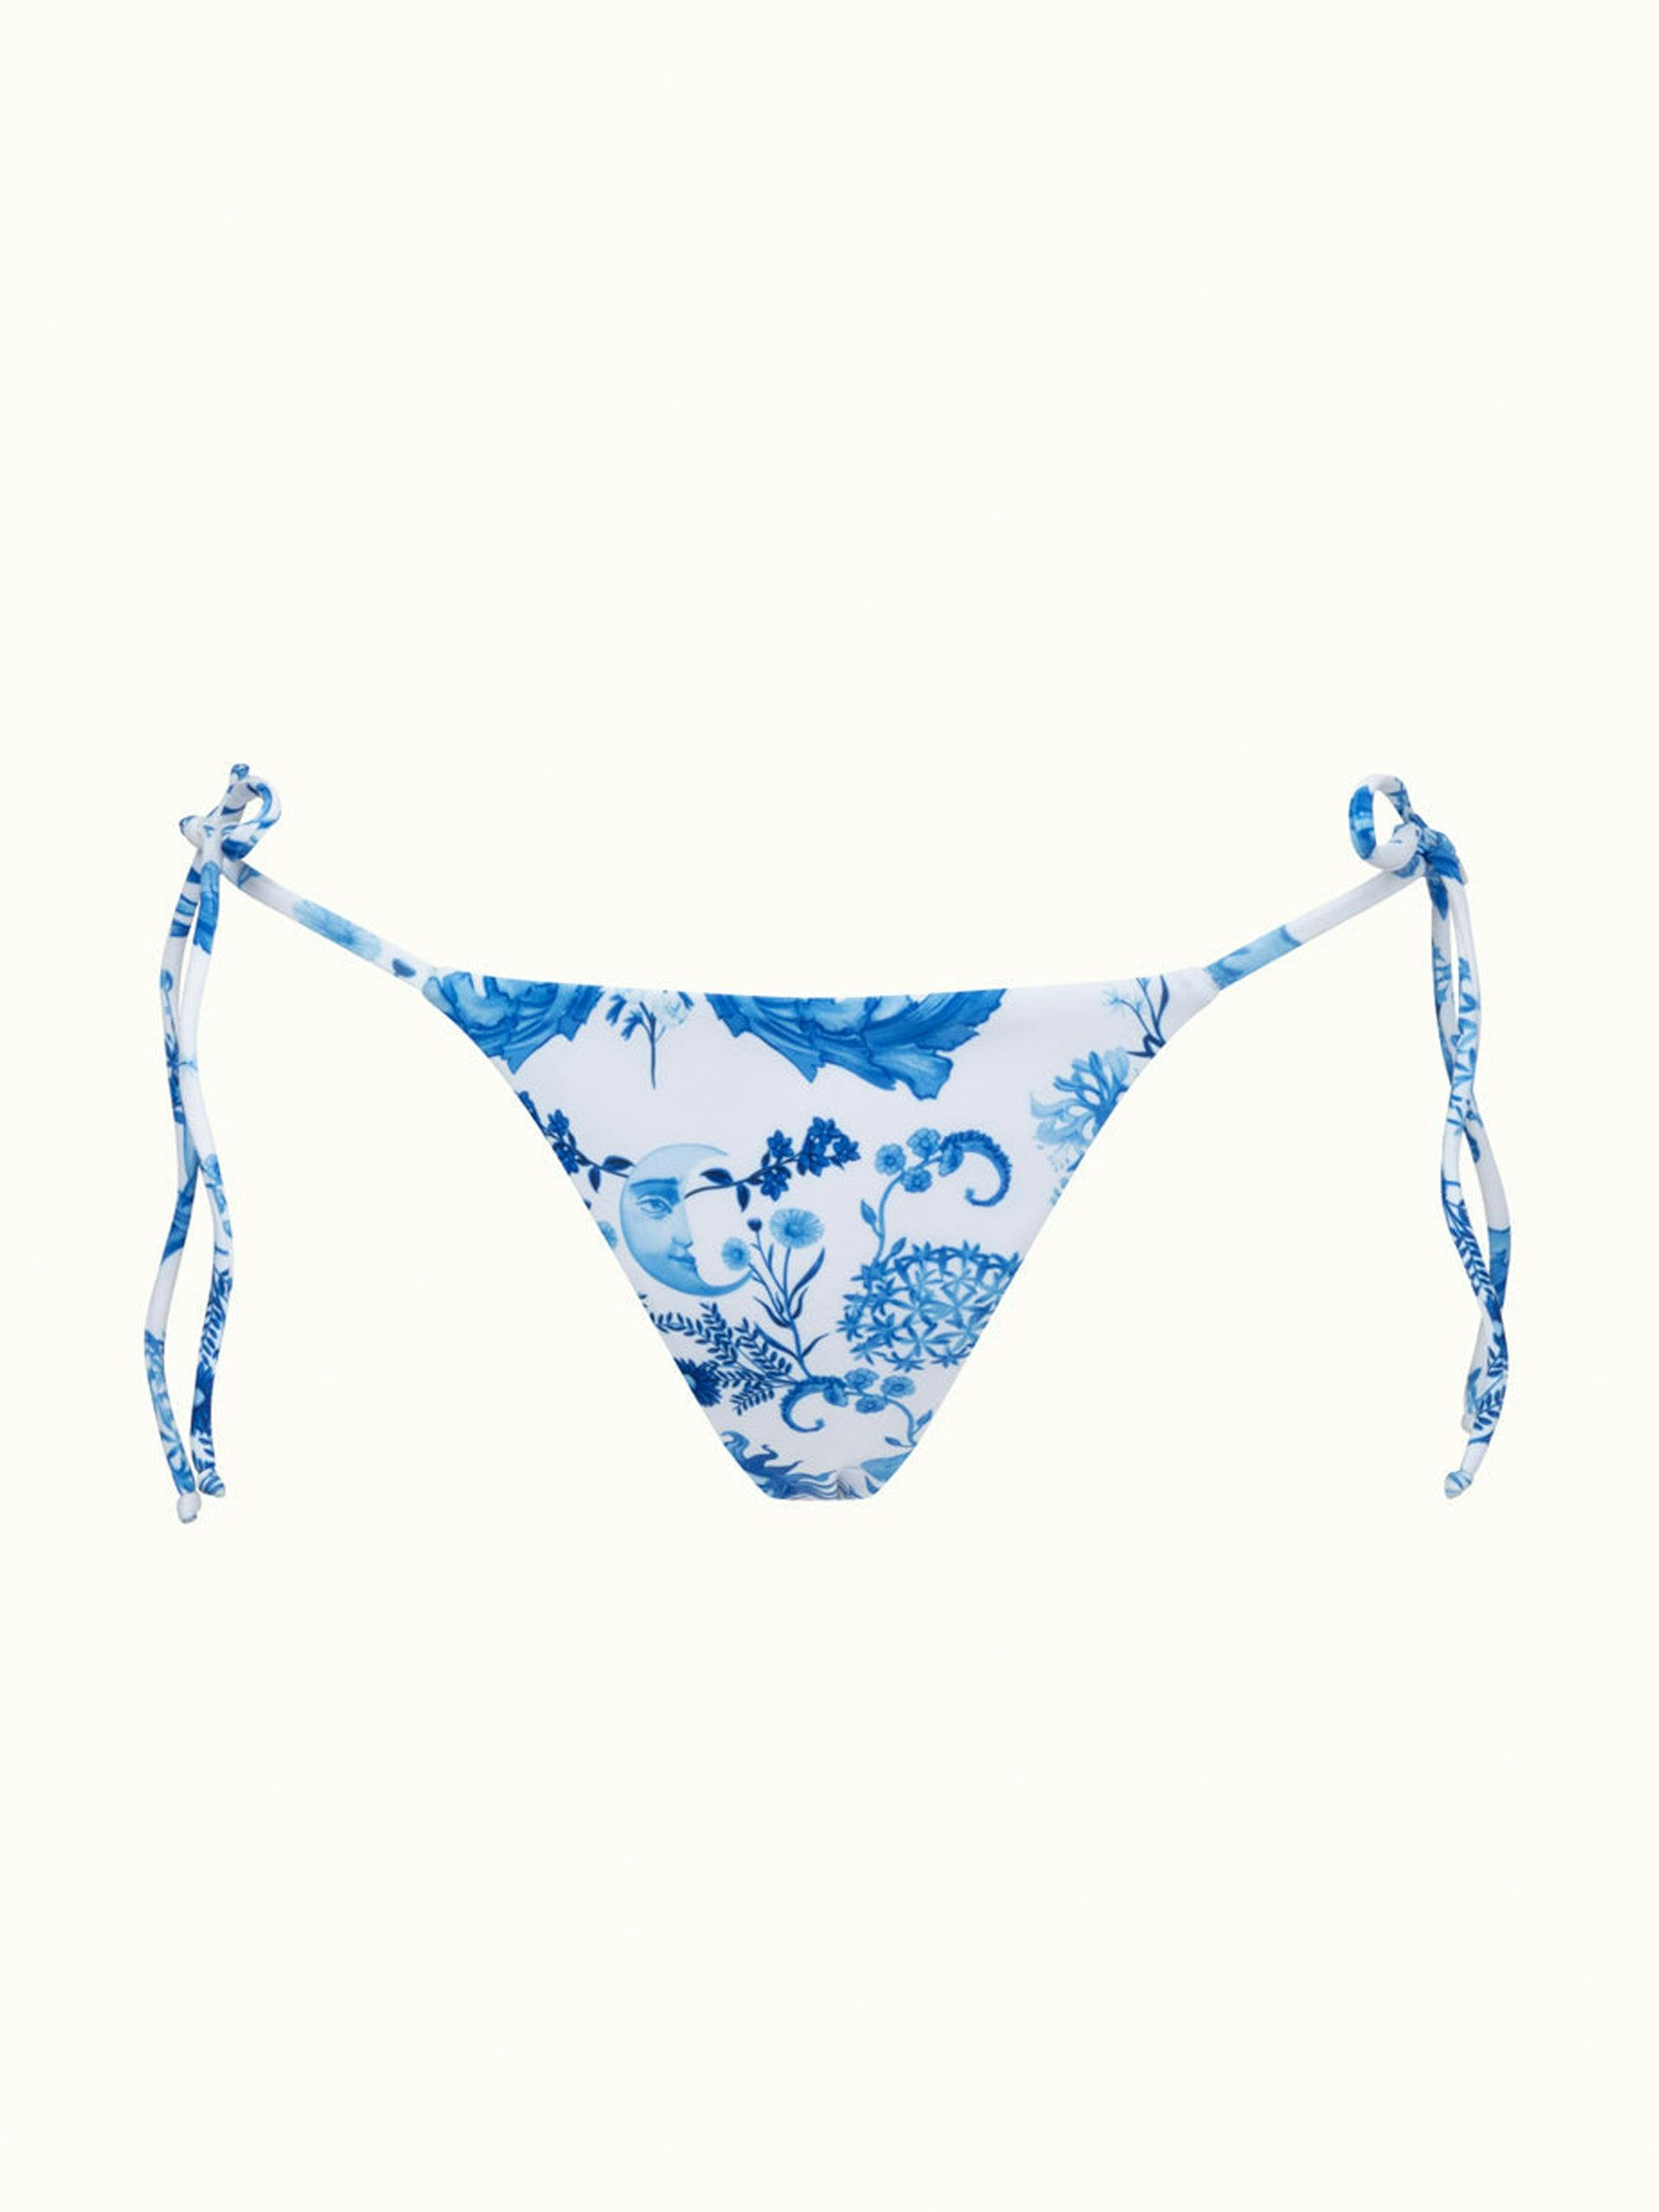 Borgo de Nor x Talia Collins blue and white electra bikini bottoms